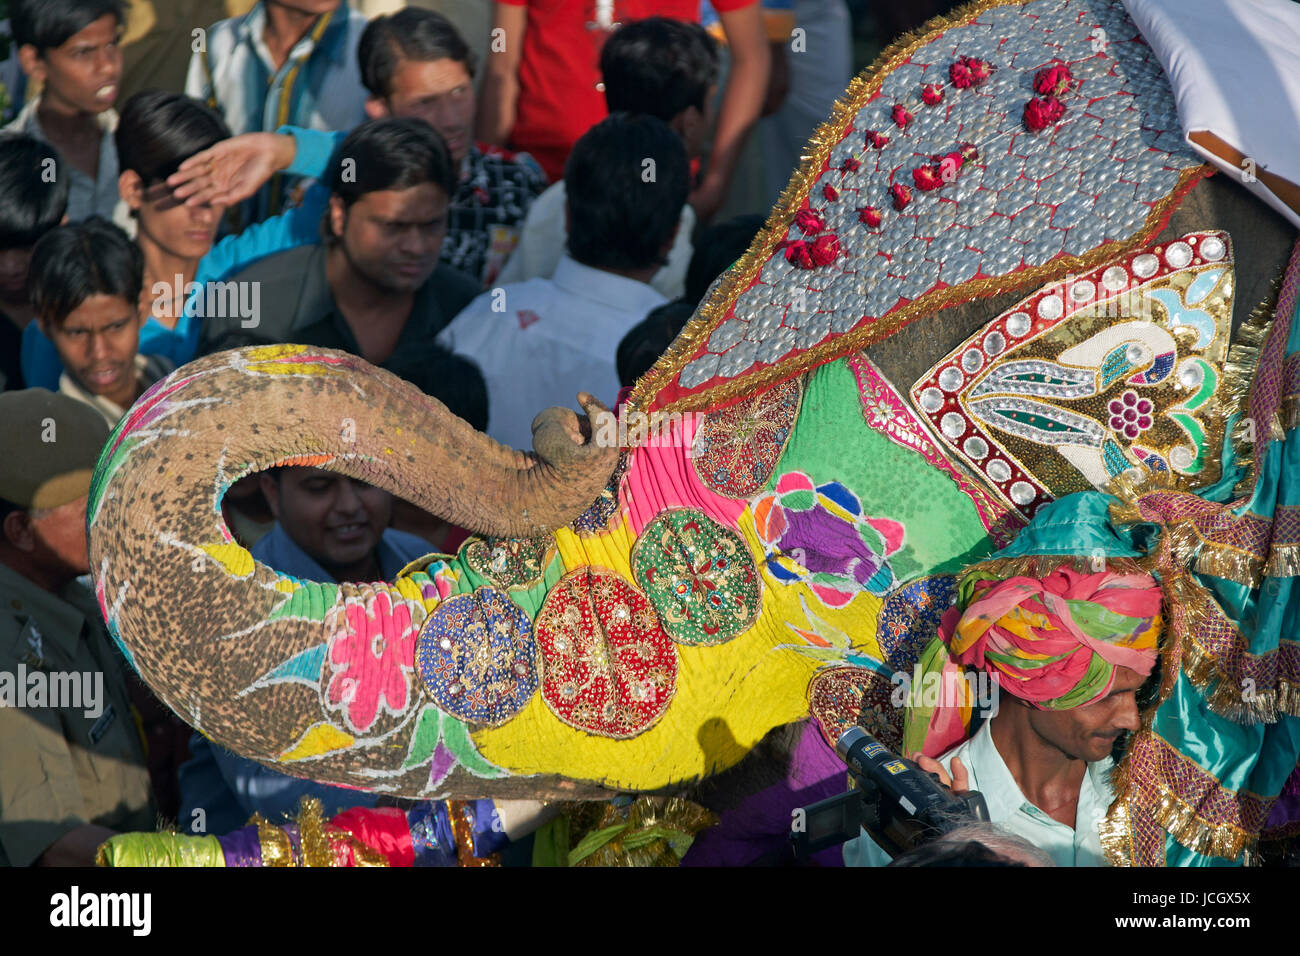 Décoré d'éléphants indiens (Elephas maximus indicus) parmi une foule de gens à l'assemblée annuelle de l'elephant festival à Jaipur, Rajasthan, Inde. Banque D'Images